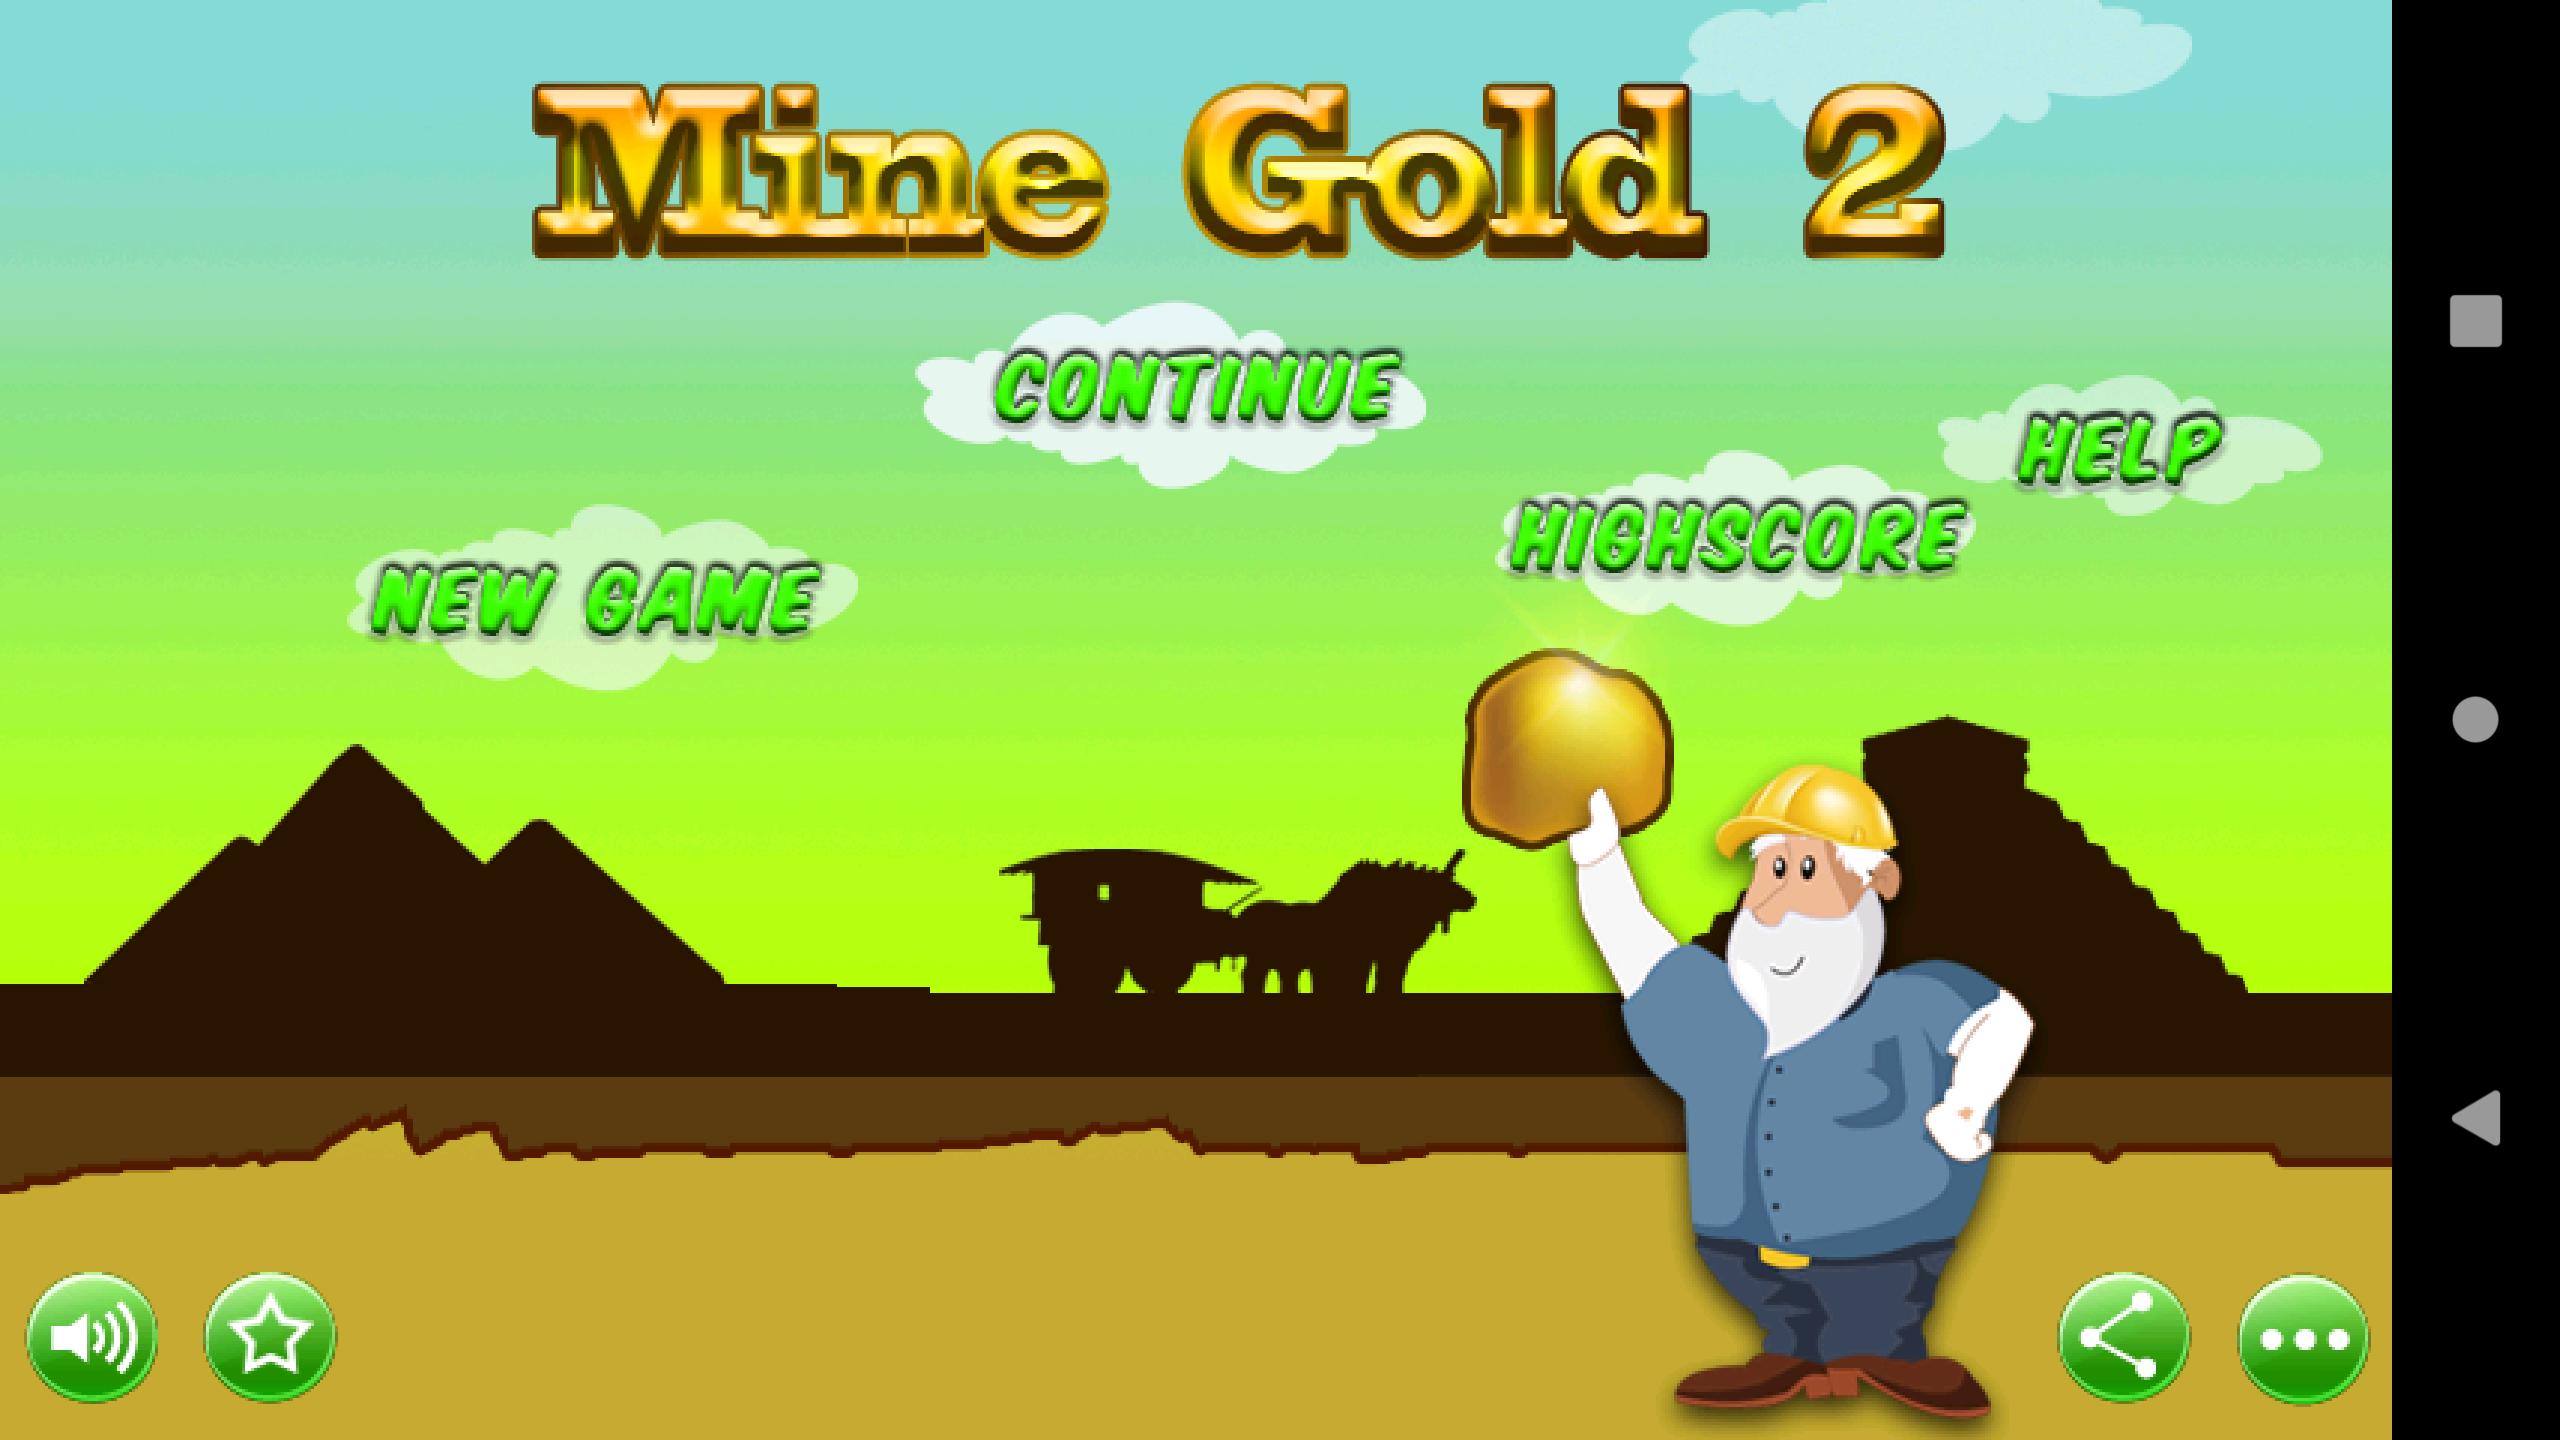 Голд майнер. Игра Golden Miner. Игра золотодобытчик. Игра на телефон Gold Miner. Gold Miner 2.